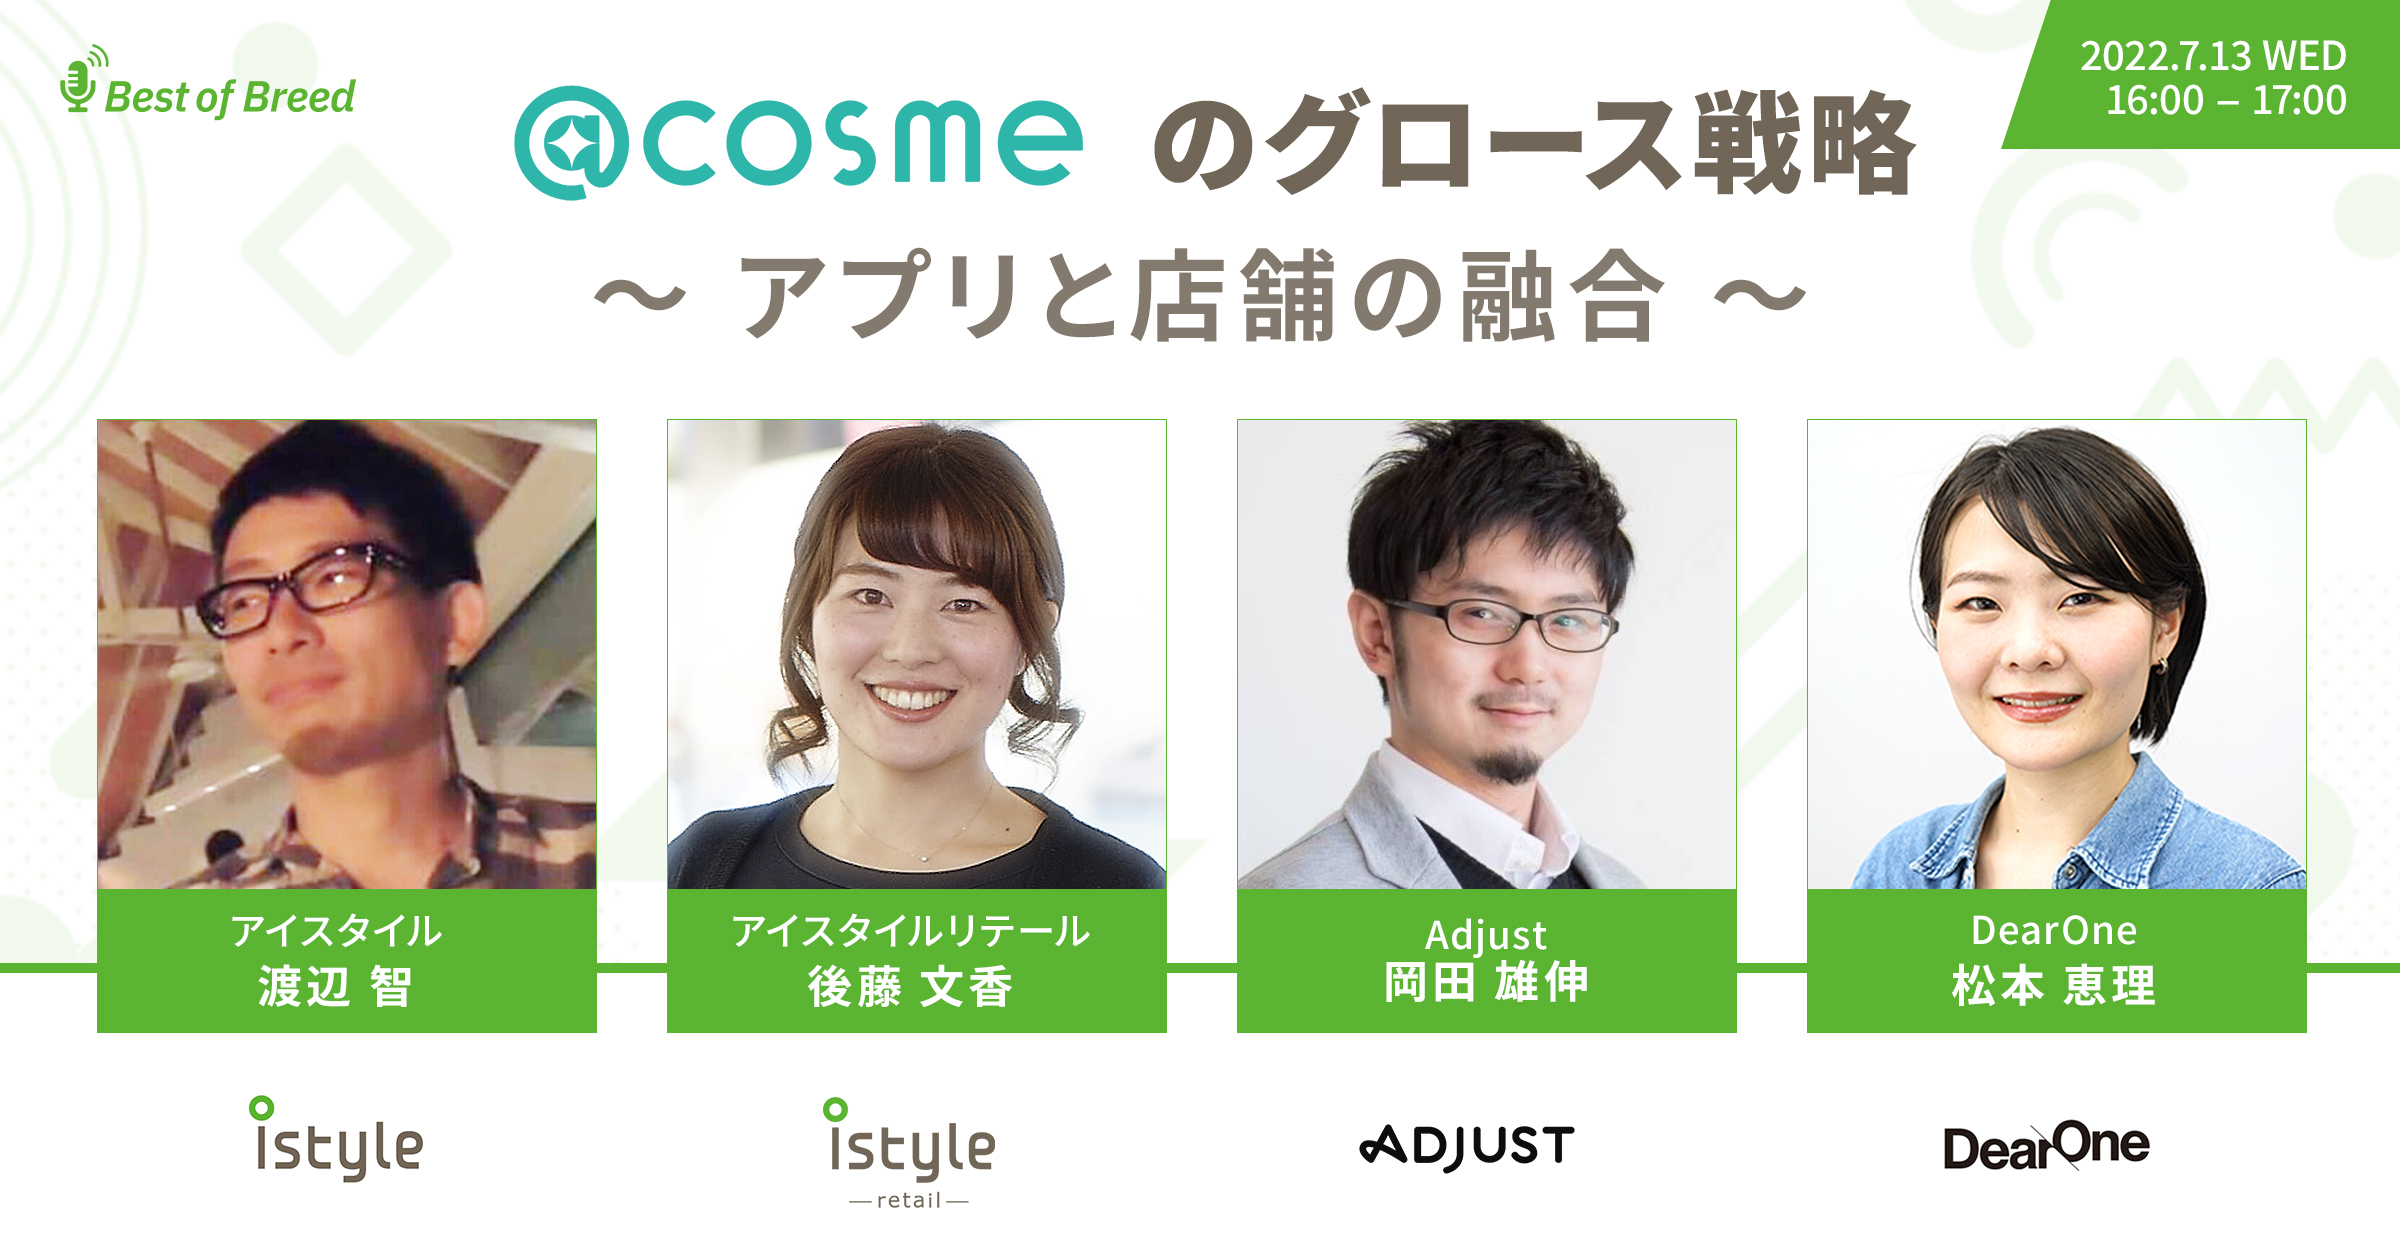 【ウェビナーレポート】@cosme のグロース戦略〜アプリと店舗の融合〜